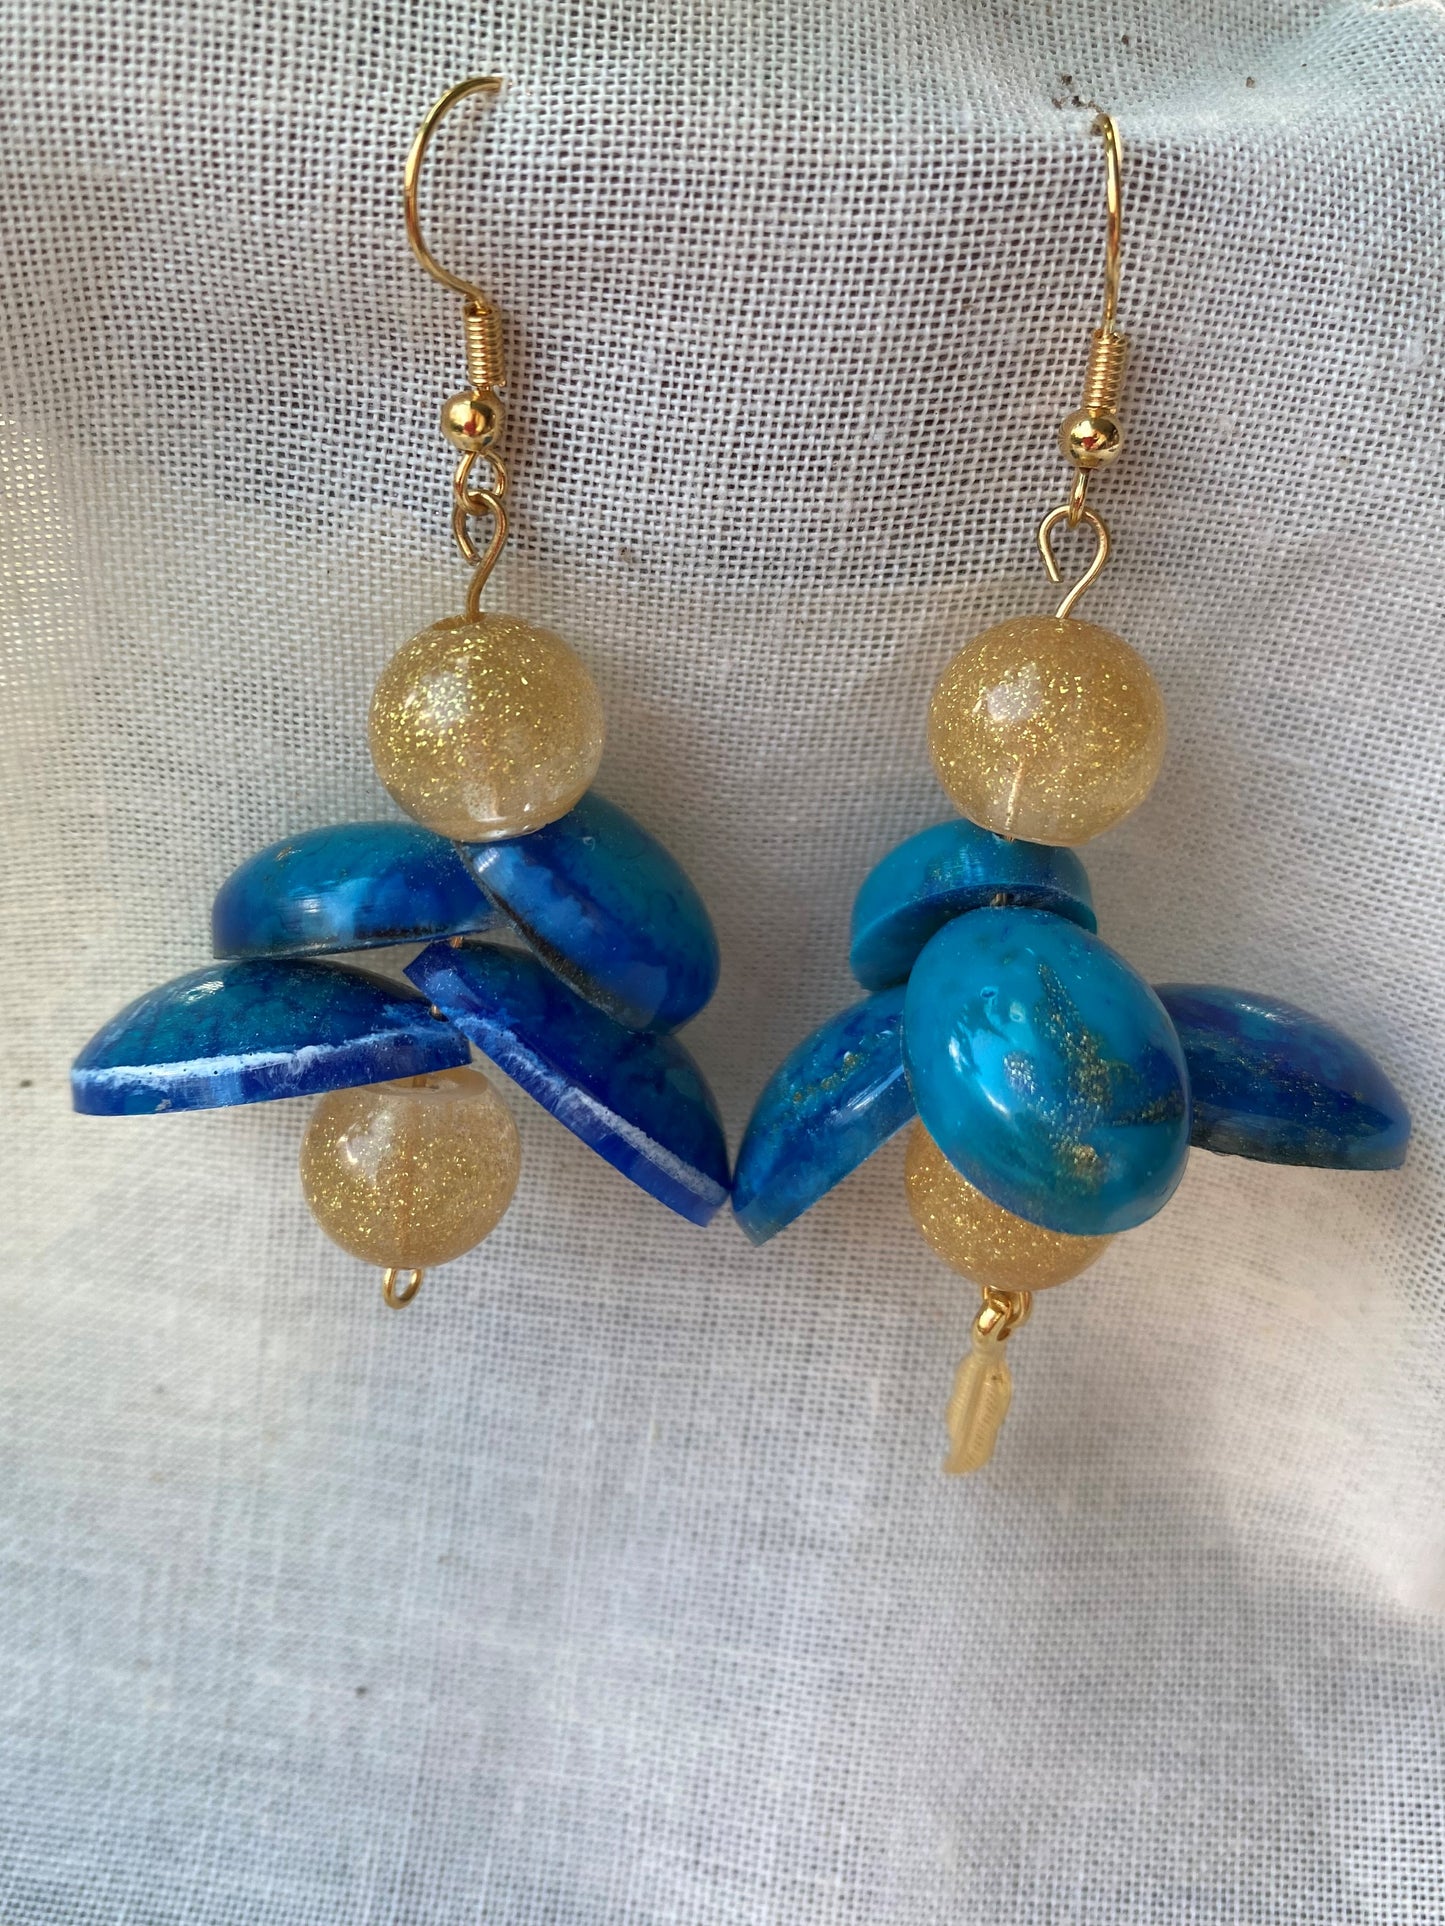 Natuur geïnspireerde goud blauwe oorbellen met organische vormen